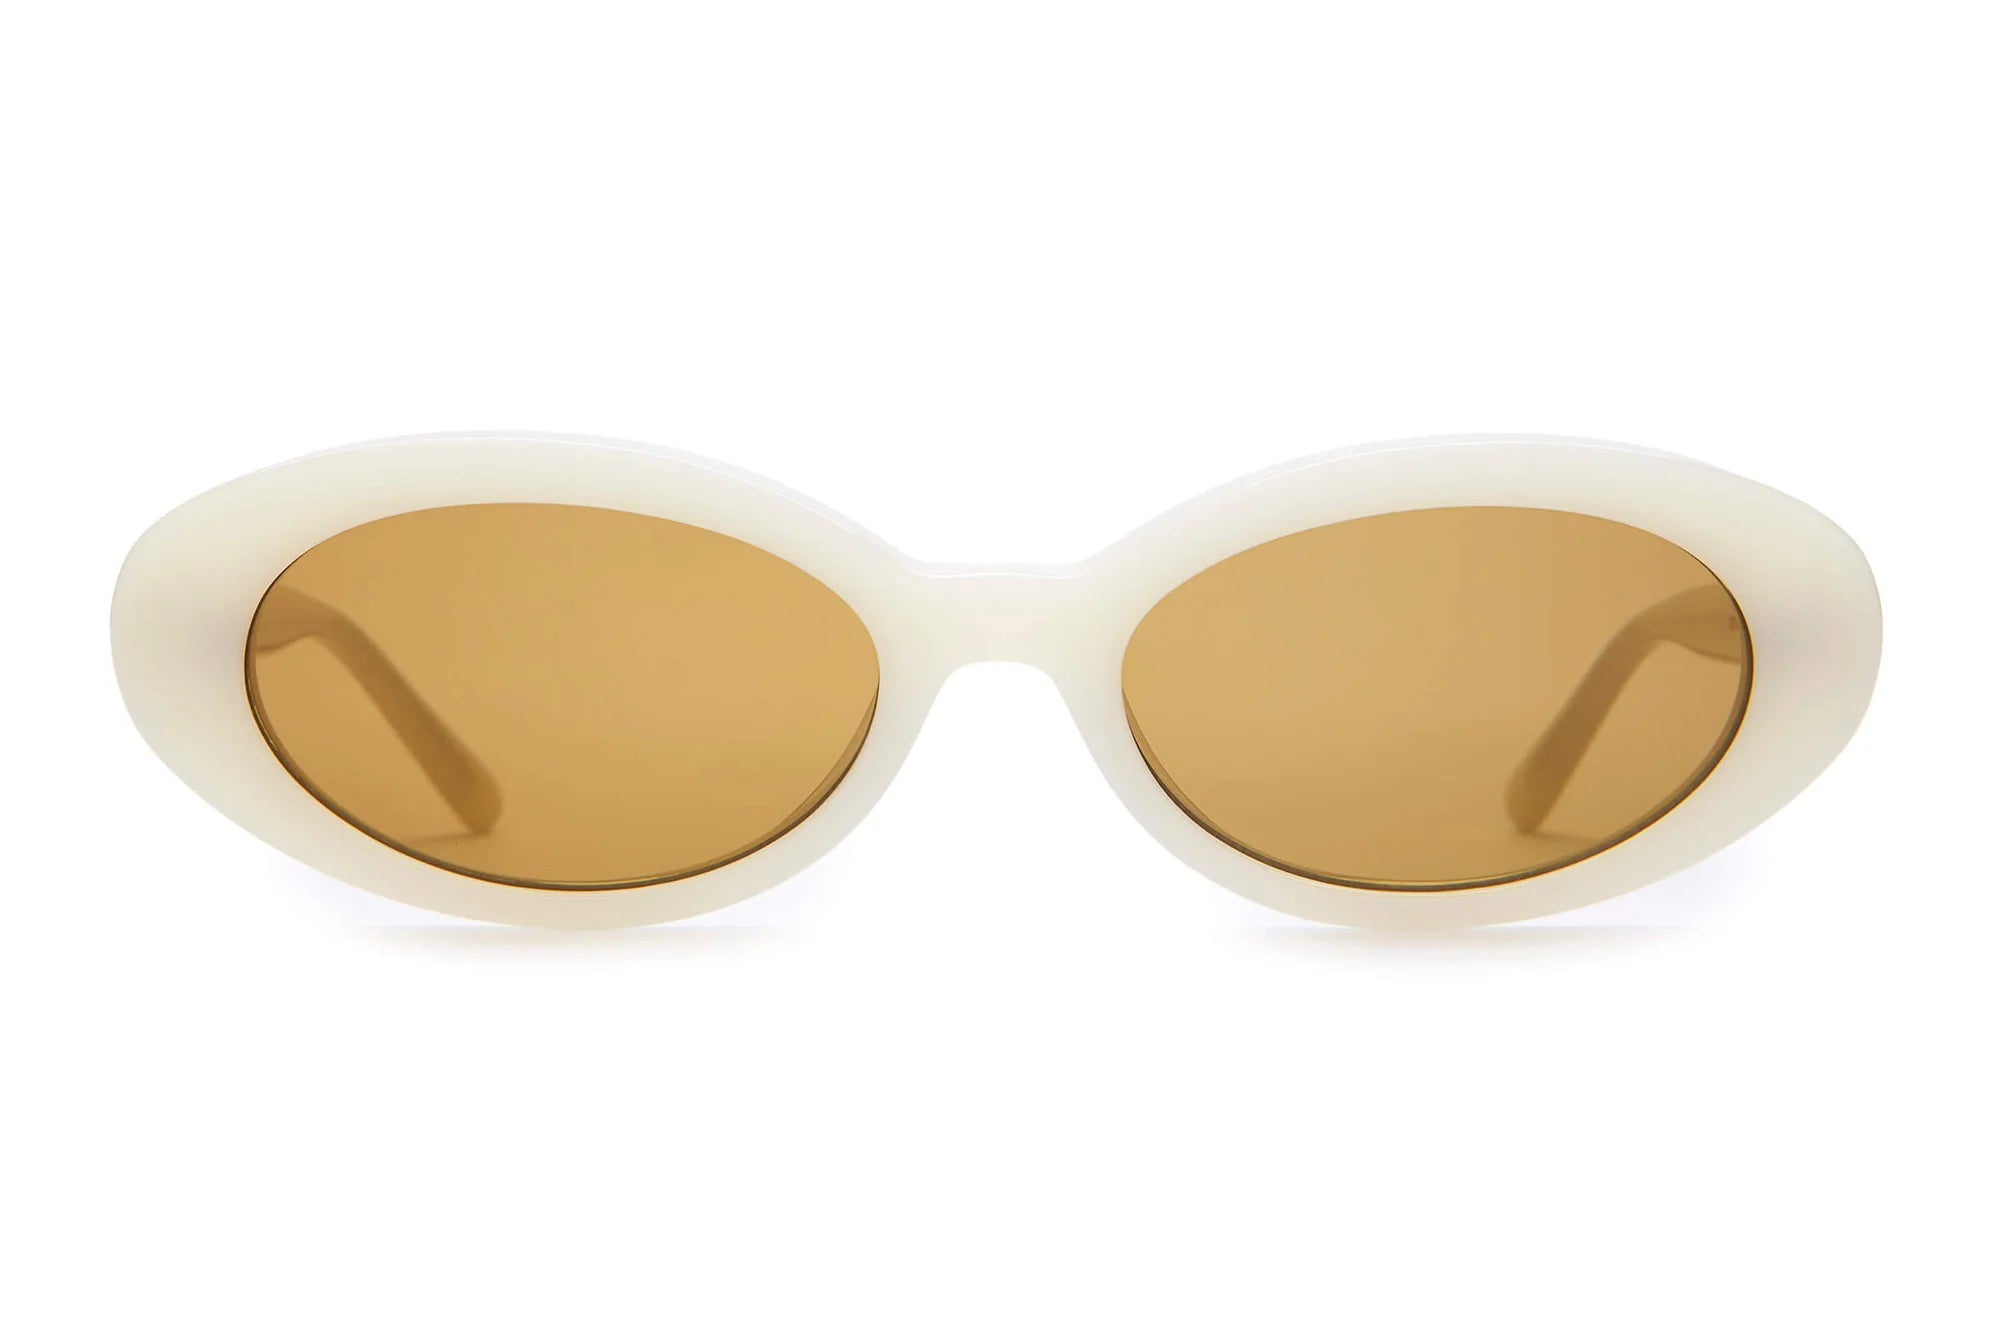 Sweet Leaf - Oat Milk Sunglasses from Crap Eyewear